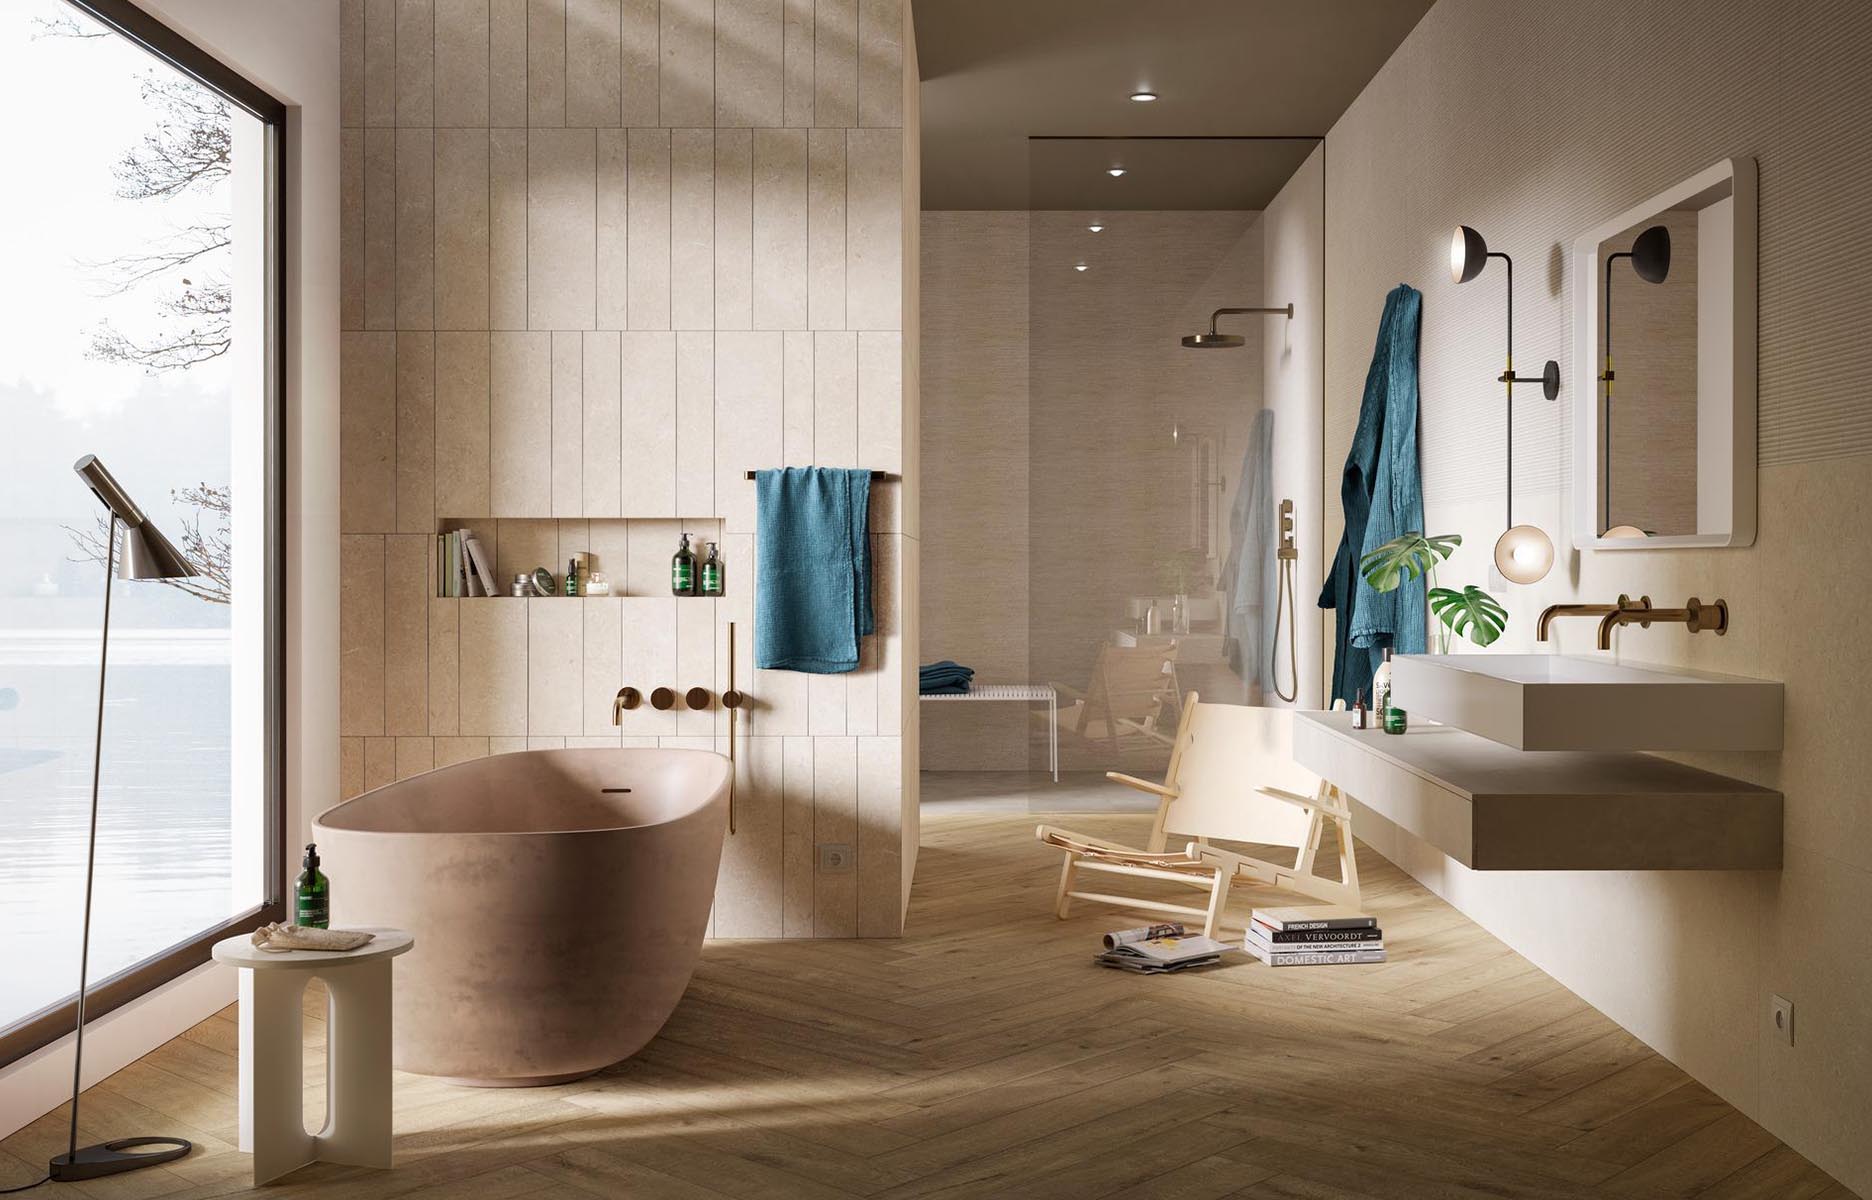 Couleur salle de bains – idées sur le carrelage et la peinture  Design  moderne de salles de bains, Couleur salle de bain, Salle de bain design